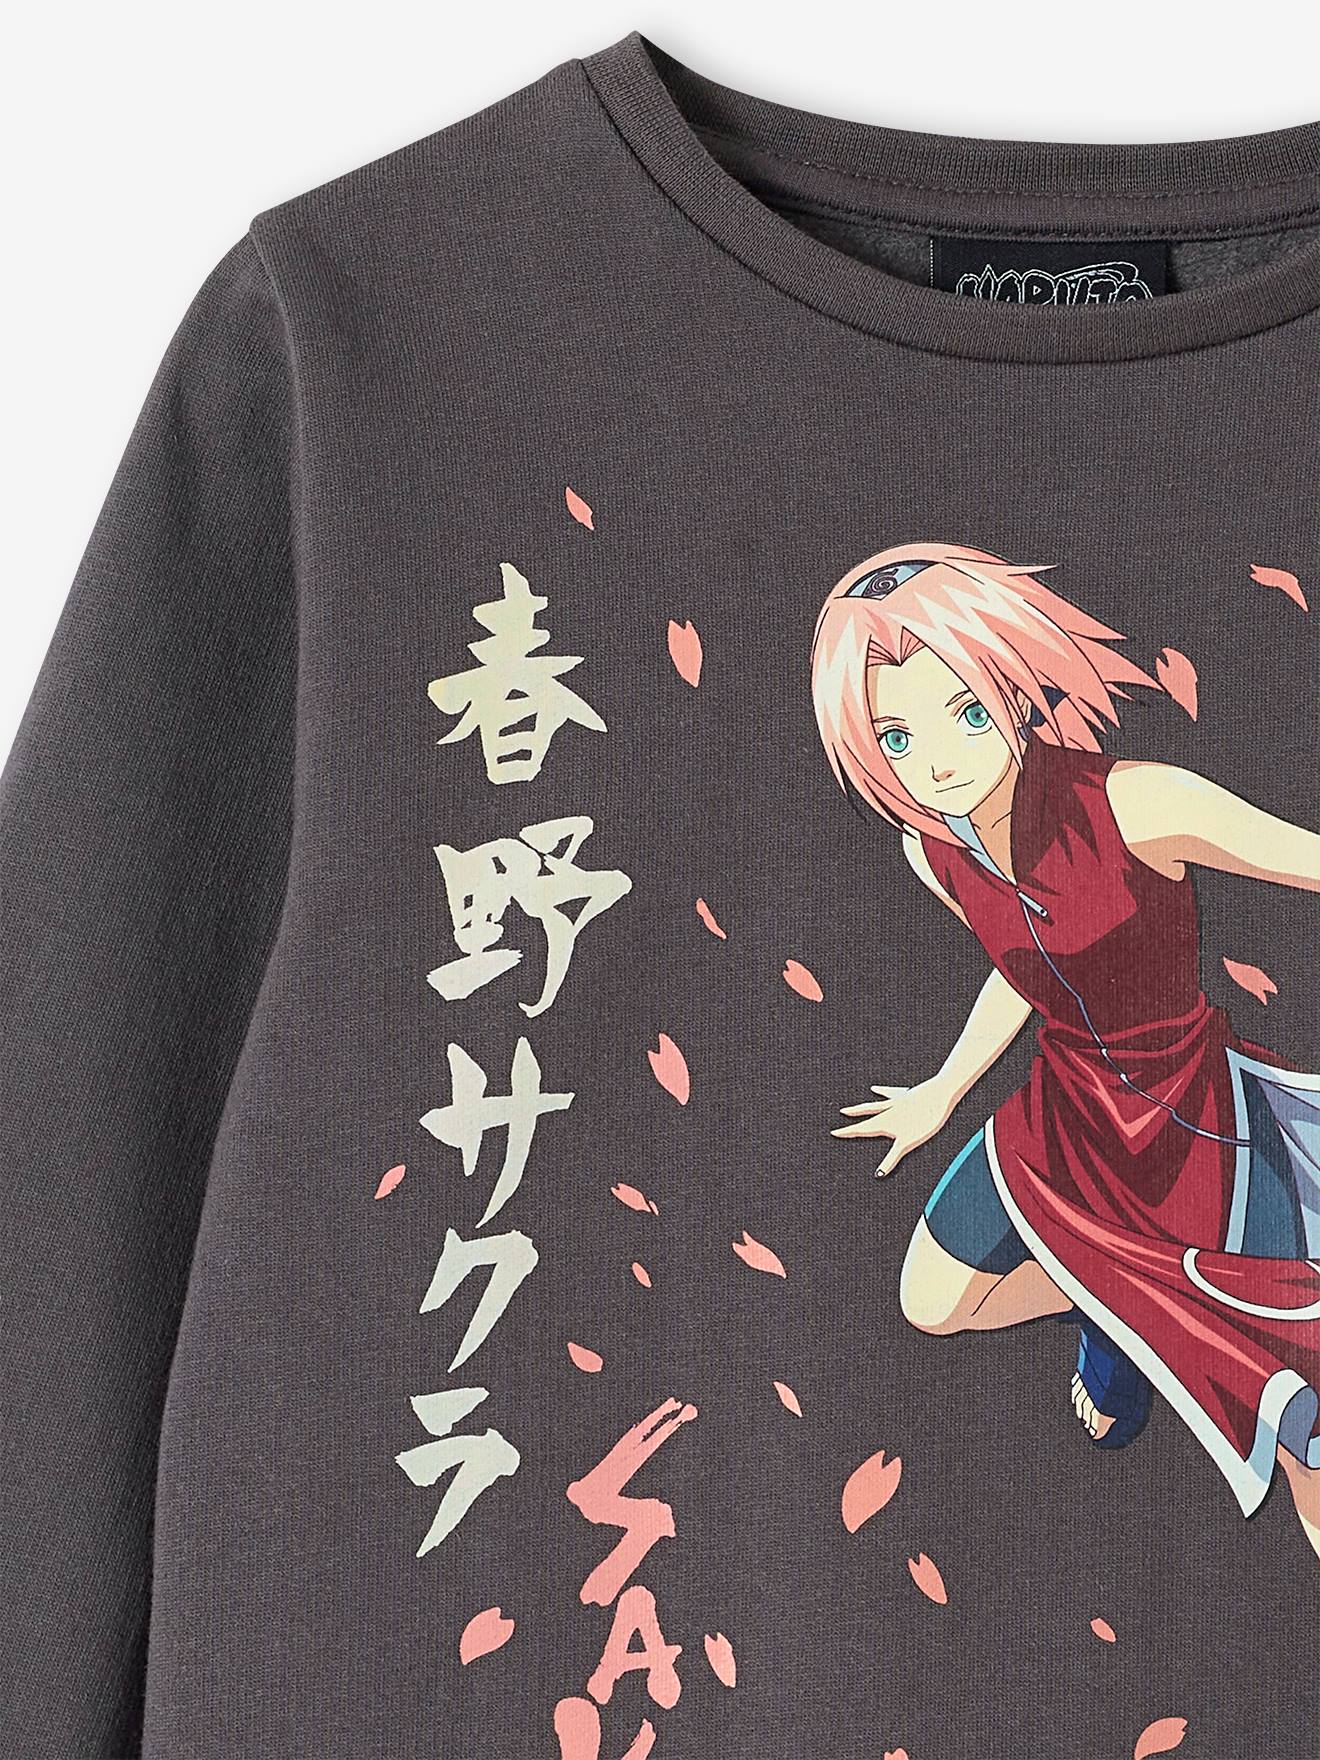 Sweat-shirt Naruto Fille et Femme à Capuche - La Boutique N°1 en